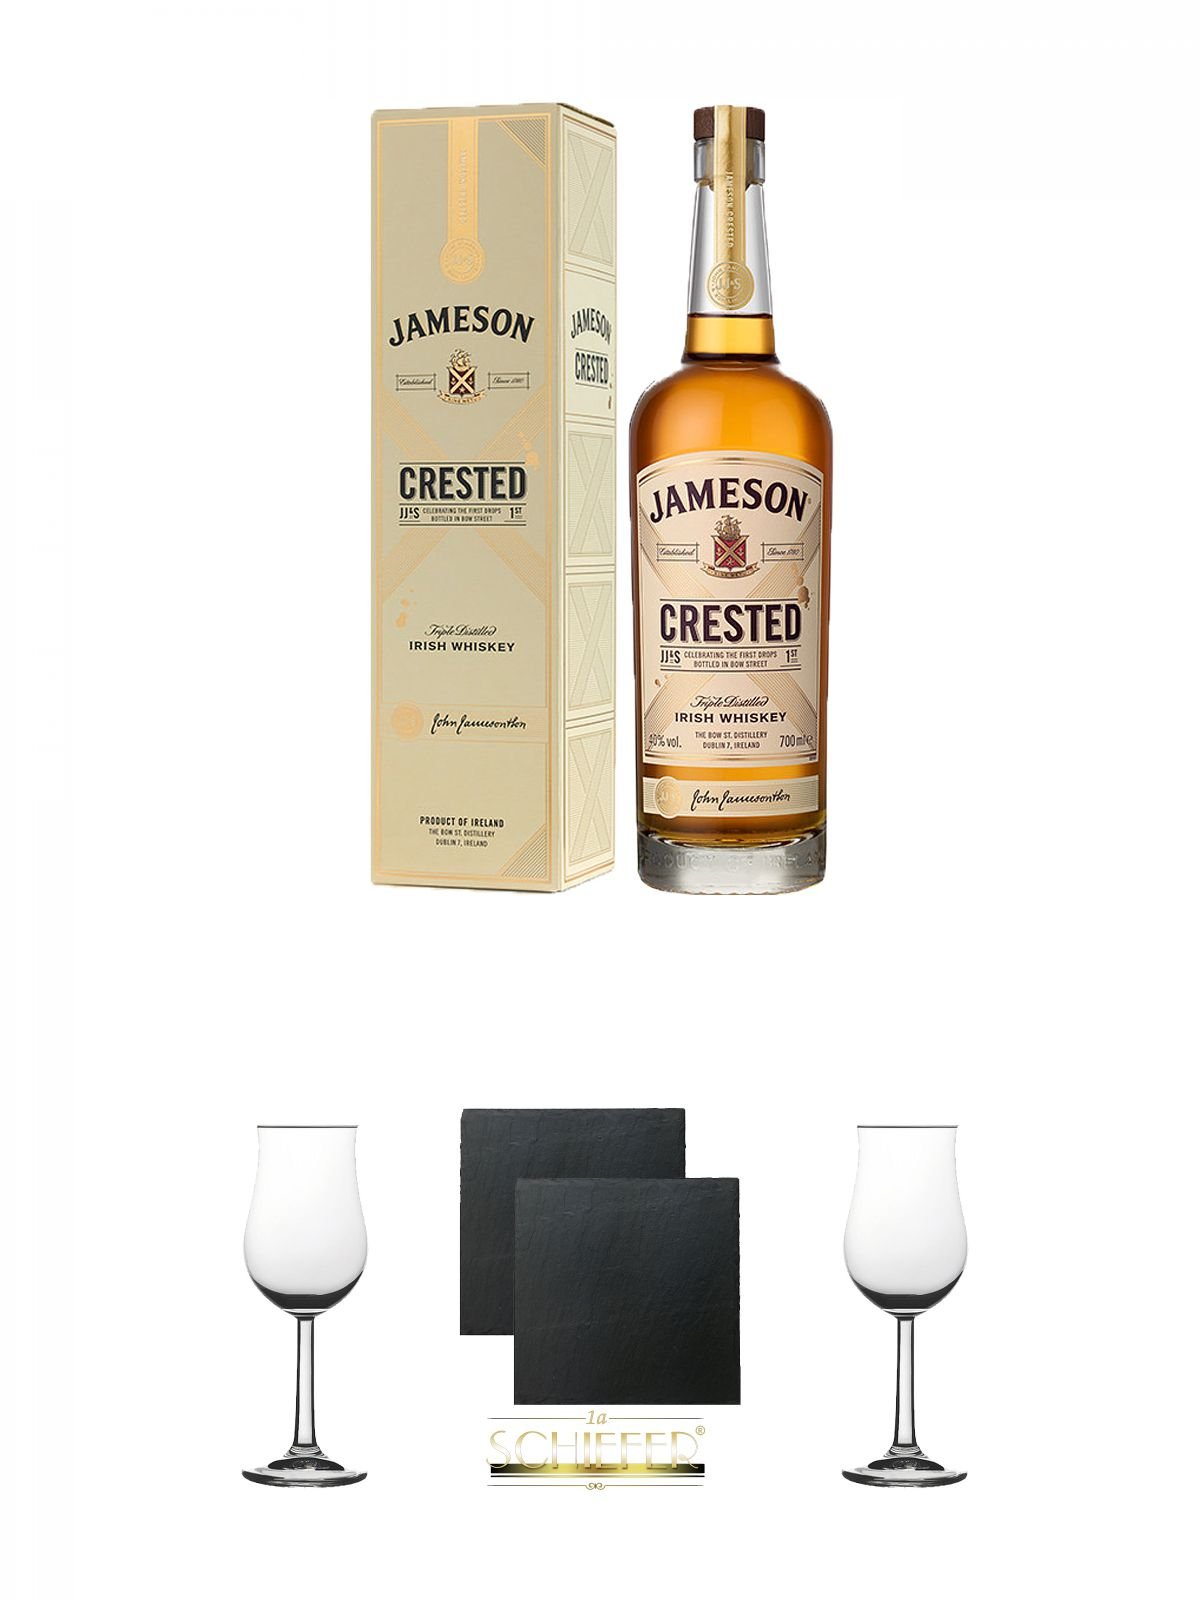 Jameson Crested Ten Irish Whiskey 0,7 Liter + Whisky Nosing Gläser Kelchglas Bugatti mit Eichstrich 2cl und 4cl 1 Stück + Schiefer Glasuntersetzer eckig ca. 9,5 cm Ø 2 Stück + Whisky Nosing Gläser Kelchglas Bugatti mit Eichstrich 2cl und 4cl 1 Stück